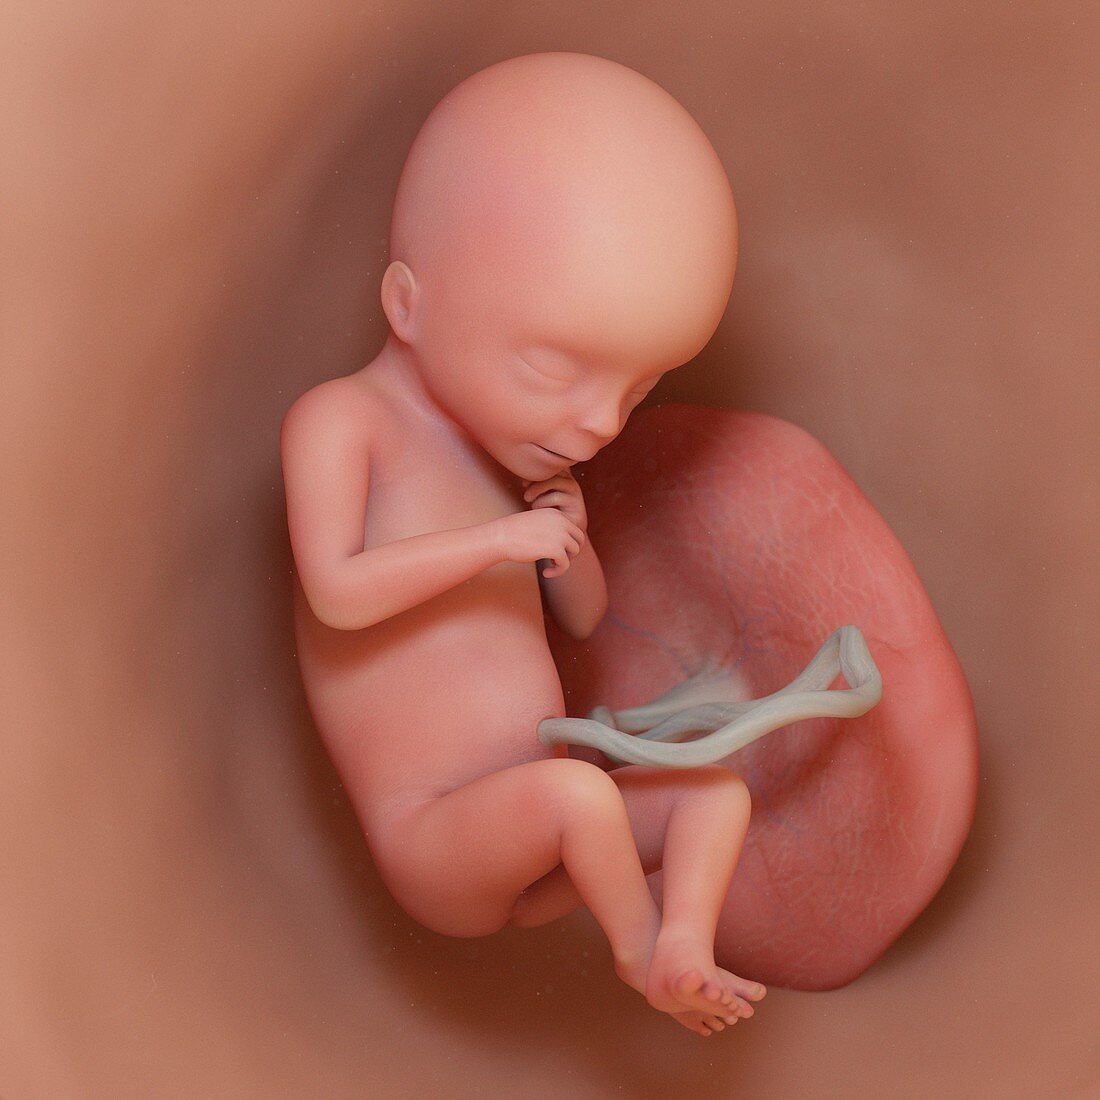 Fetus at week 18, illustration